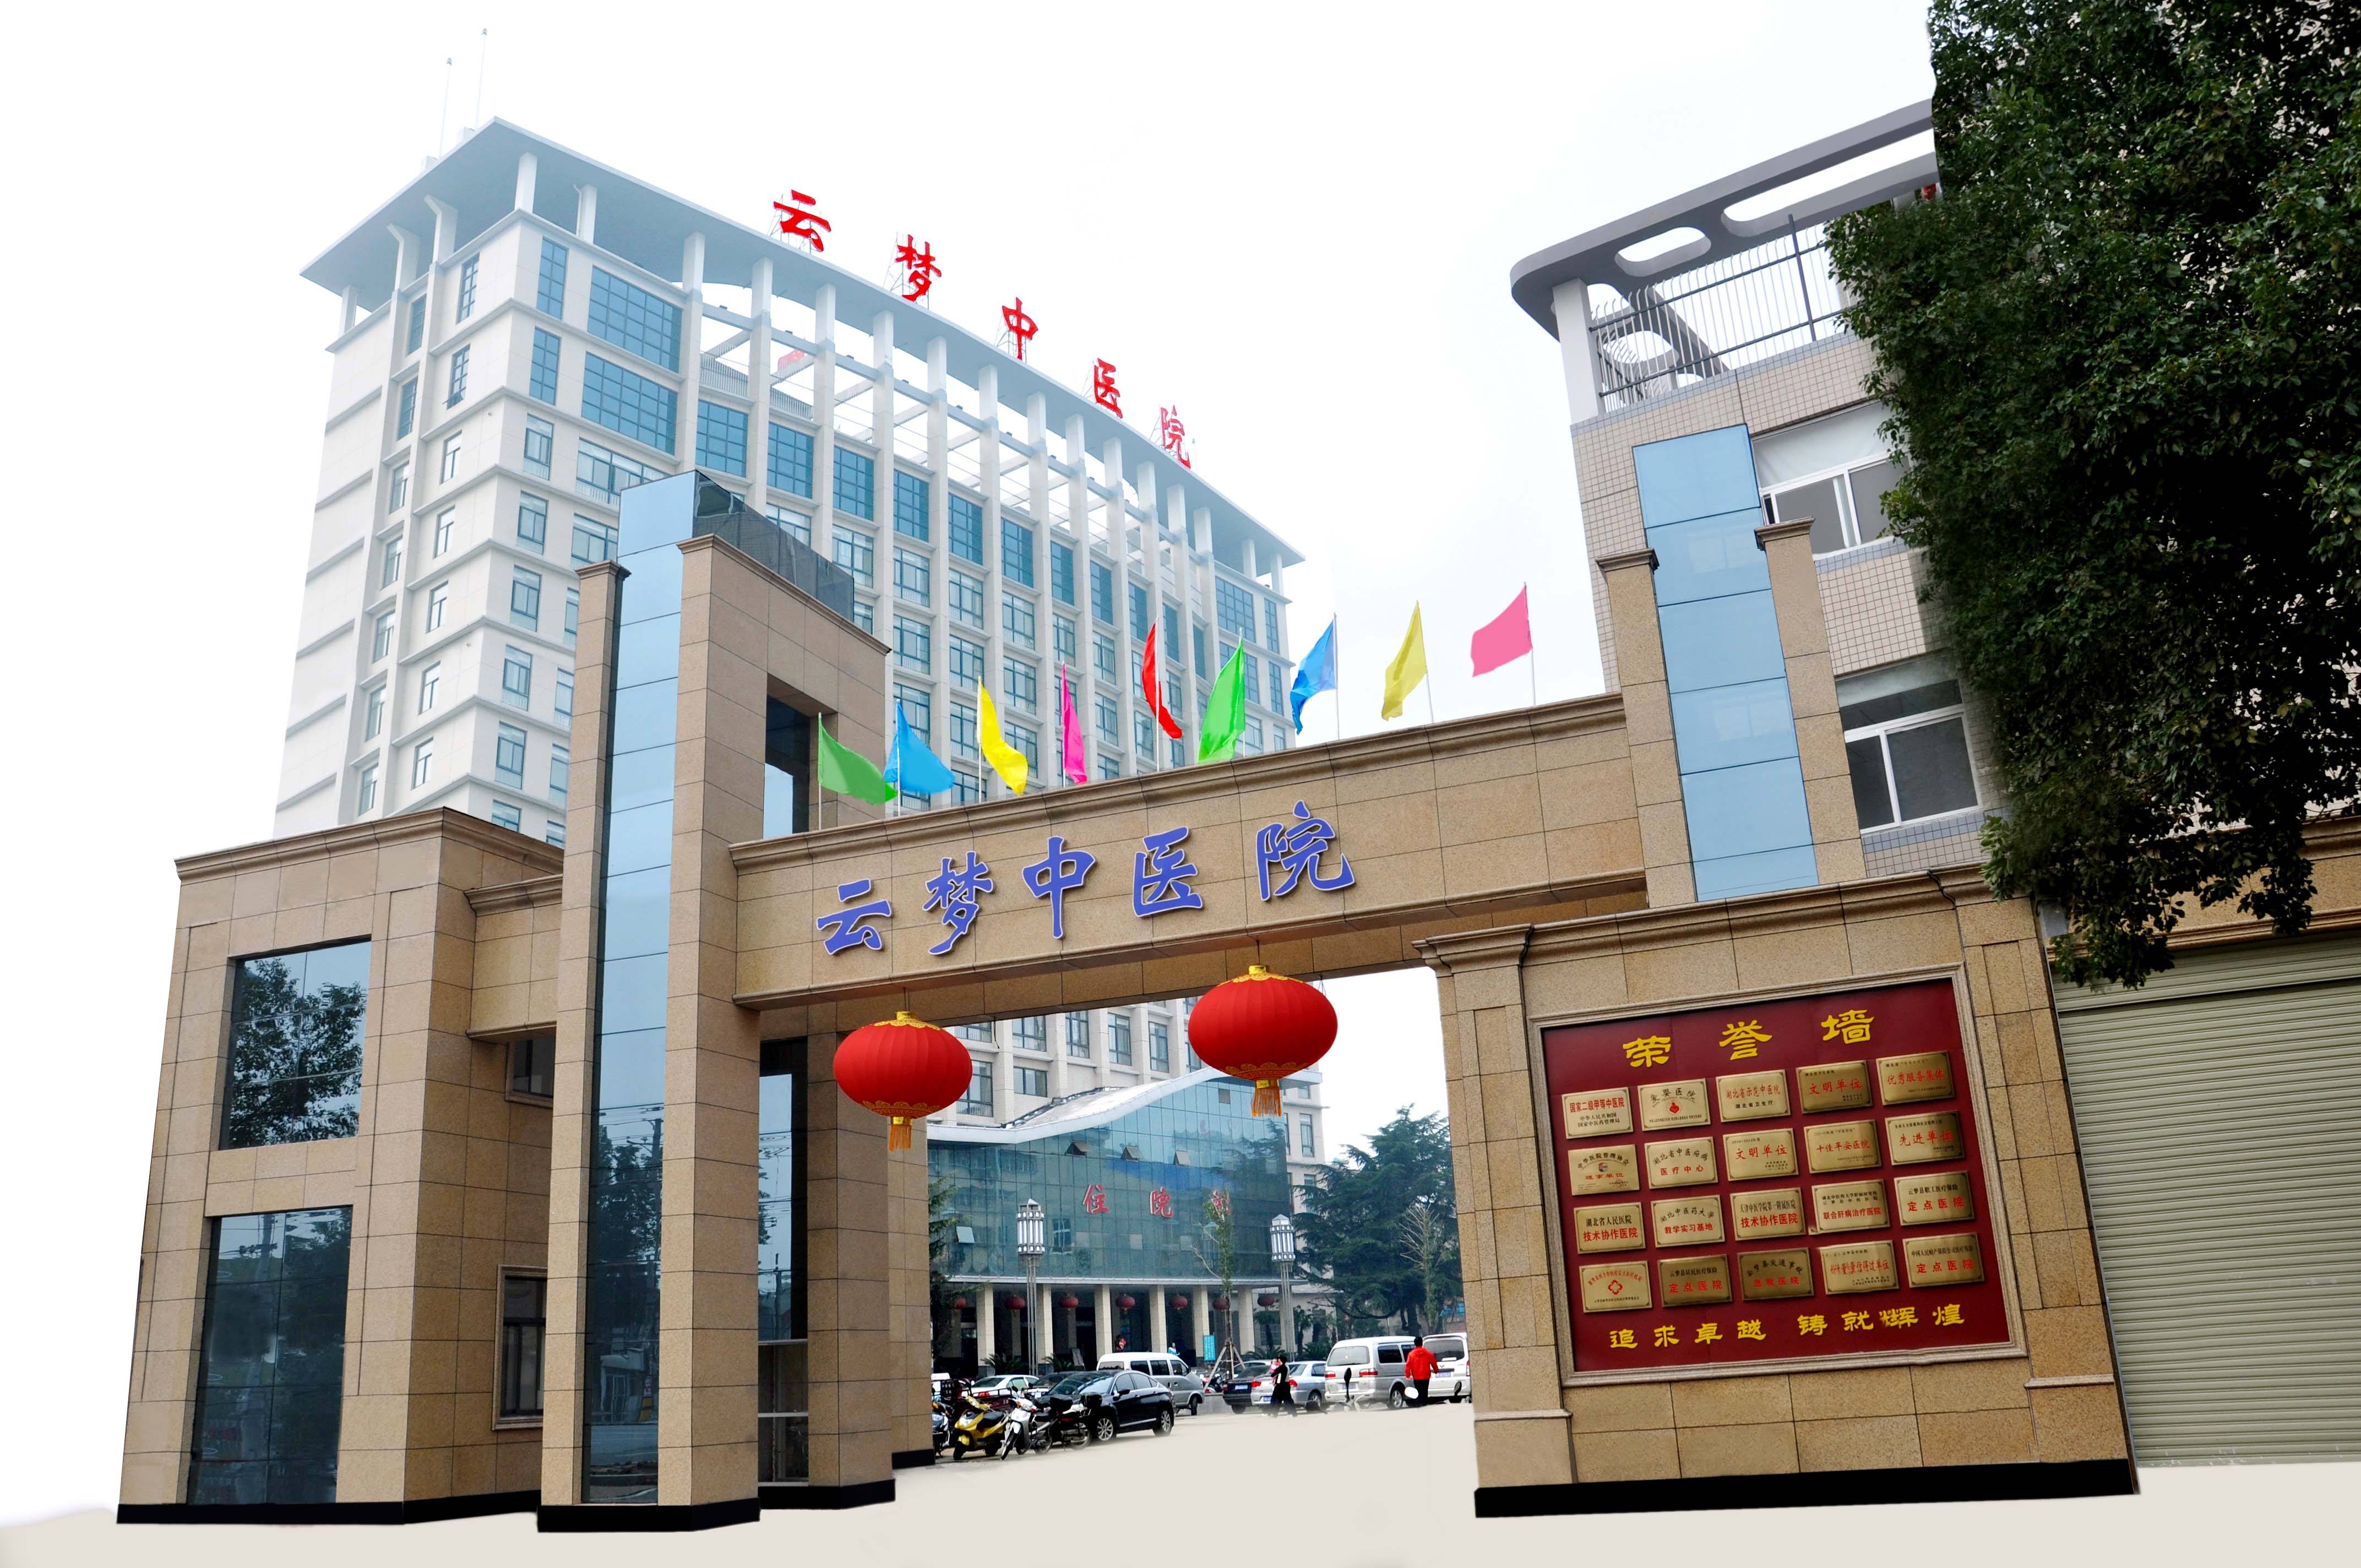 云梦县中医院污水处理设备采购及安装项目